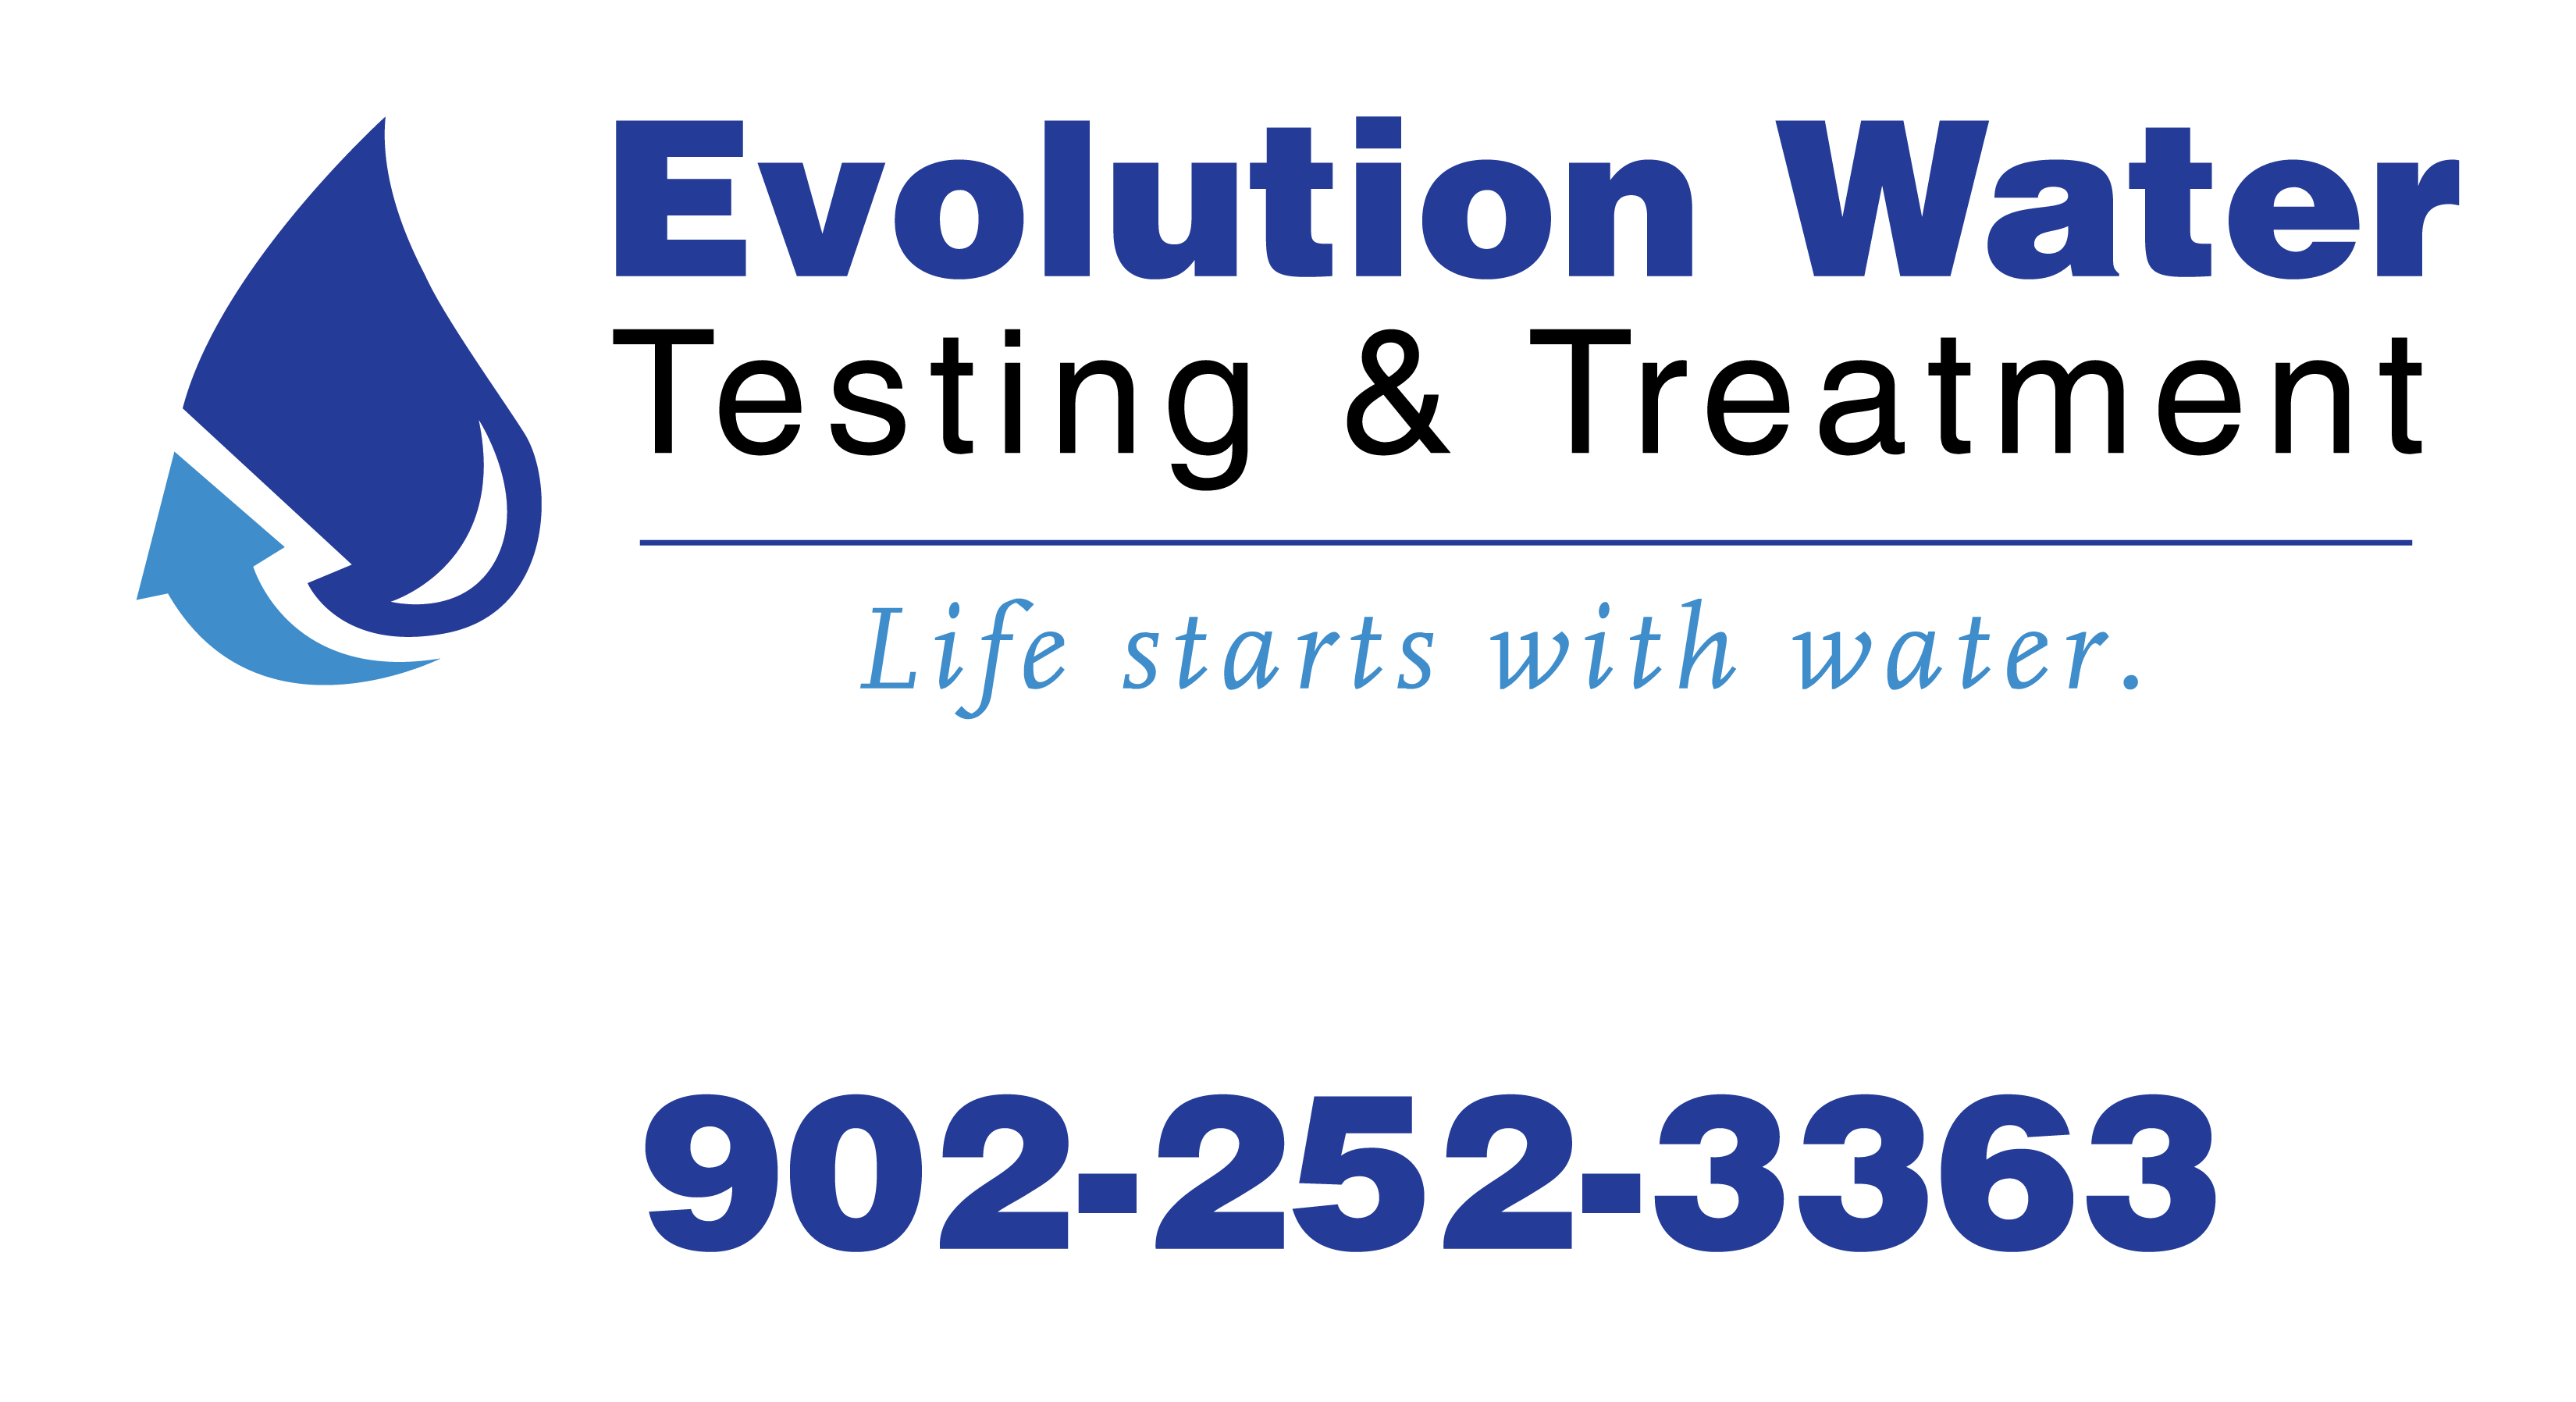 Evolution Water Testing & Treatment Ltd